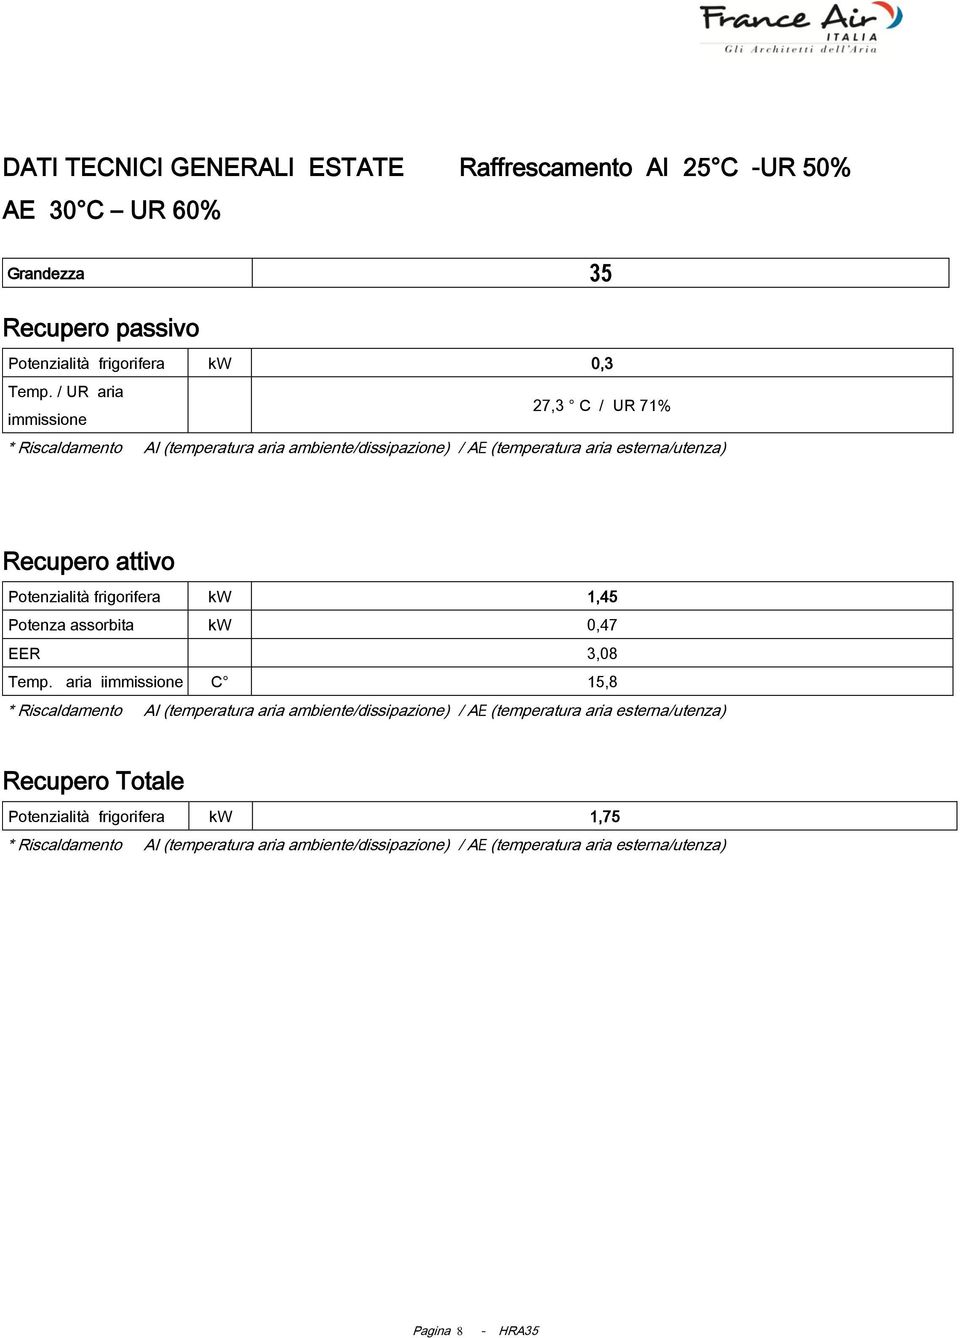 / UR aria immissione 27,3 C / UR 71% Recupero attivo Potenzialità frigorifera kw 1,45